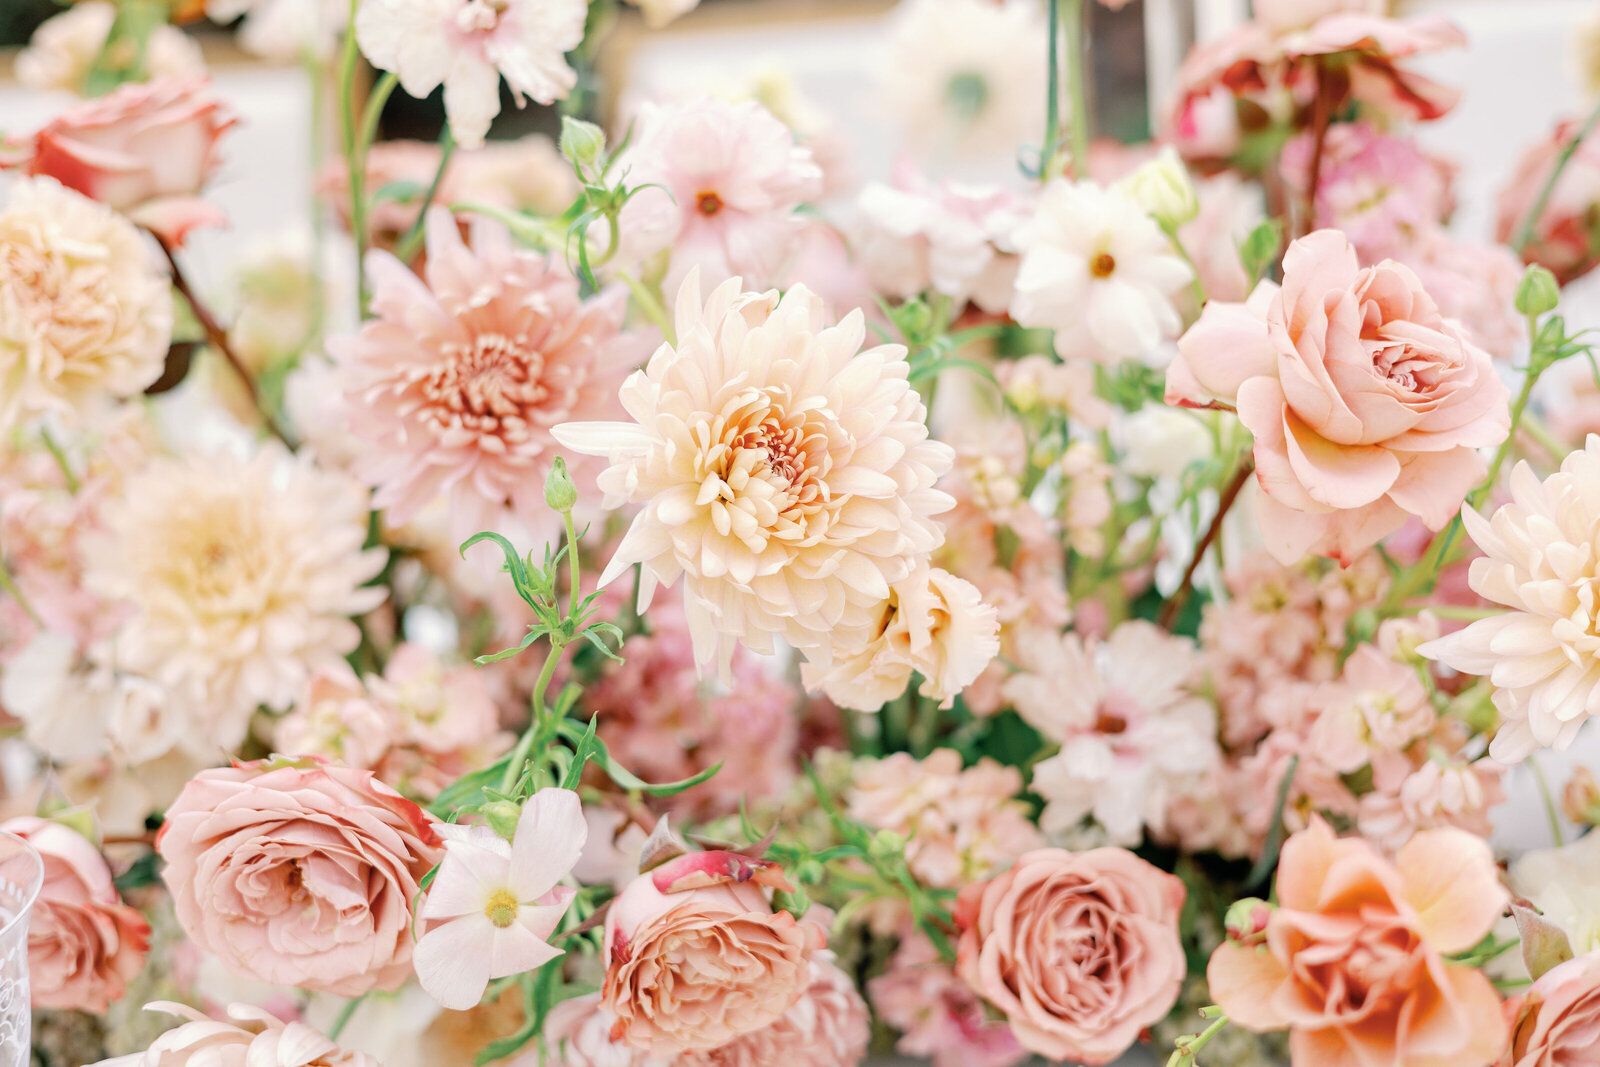 bay area photographers captures pink florals for bride bouquet